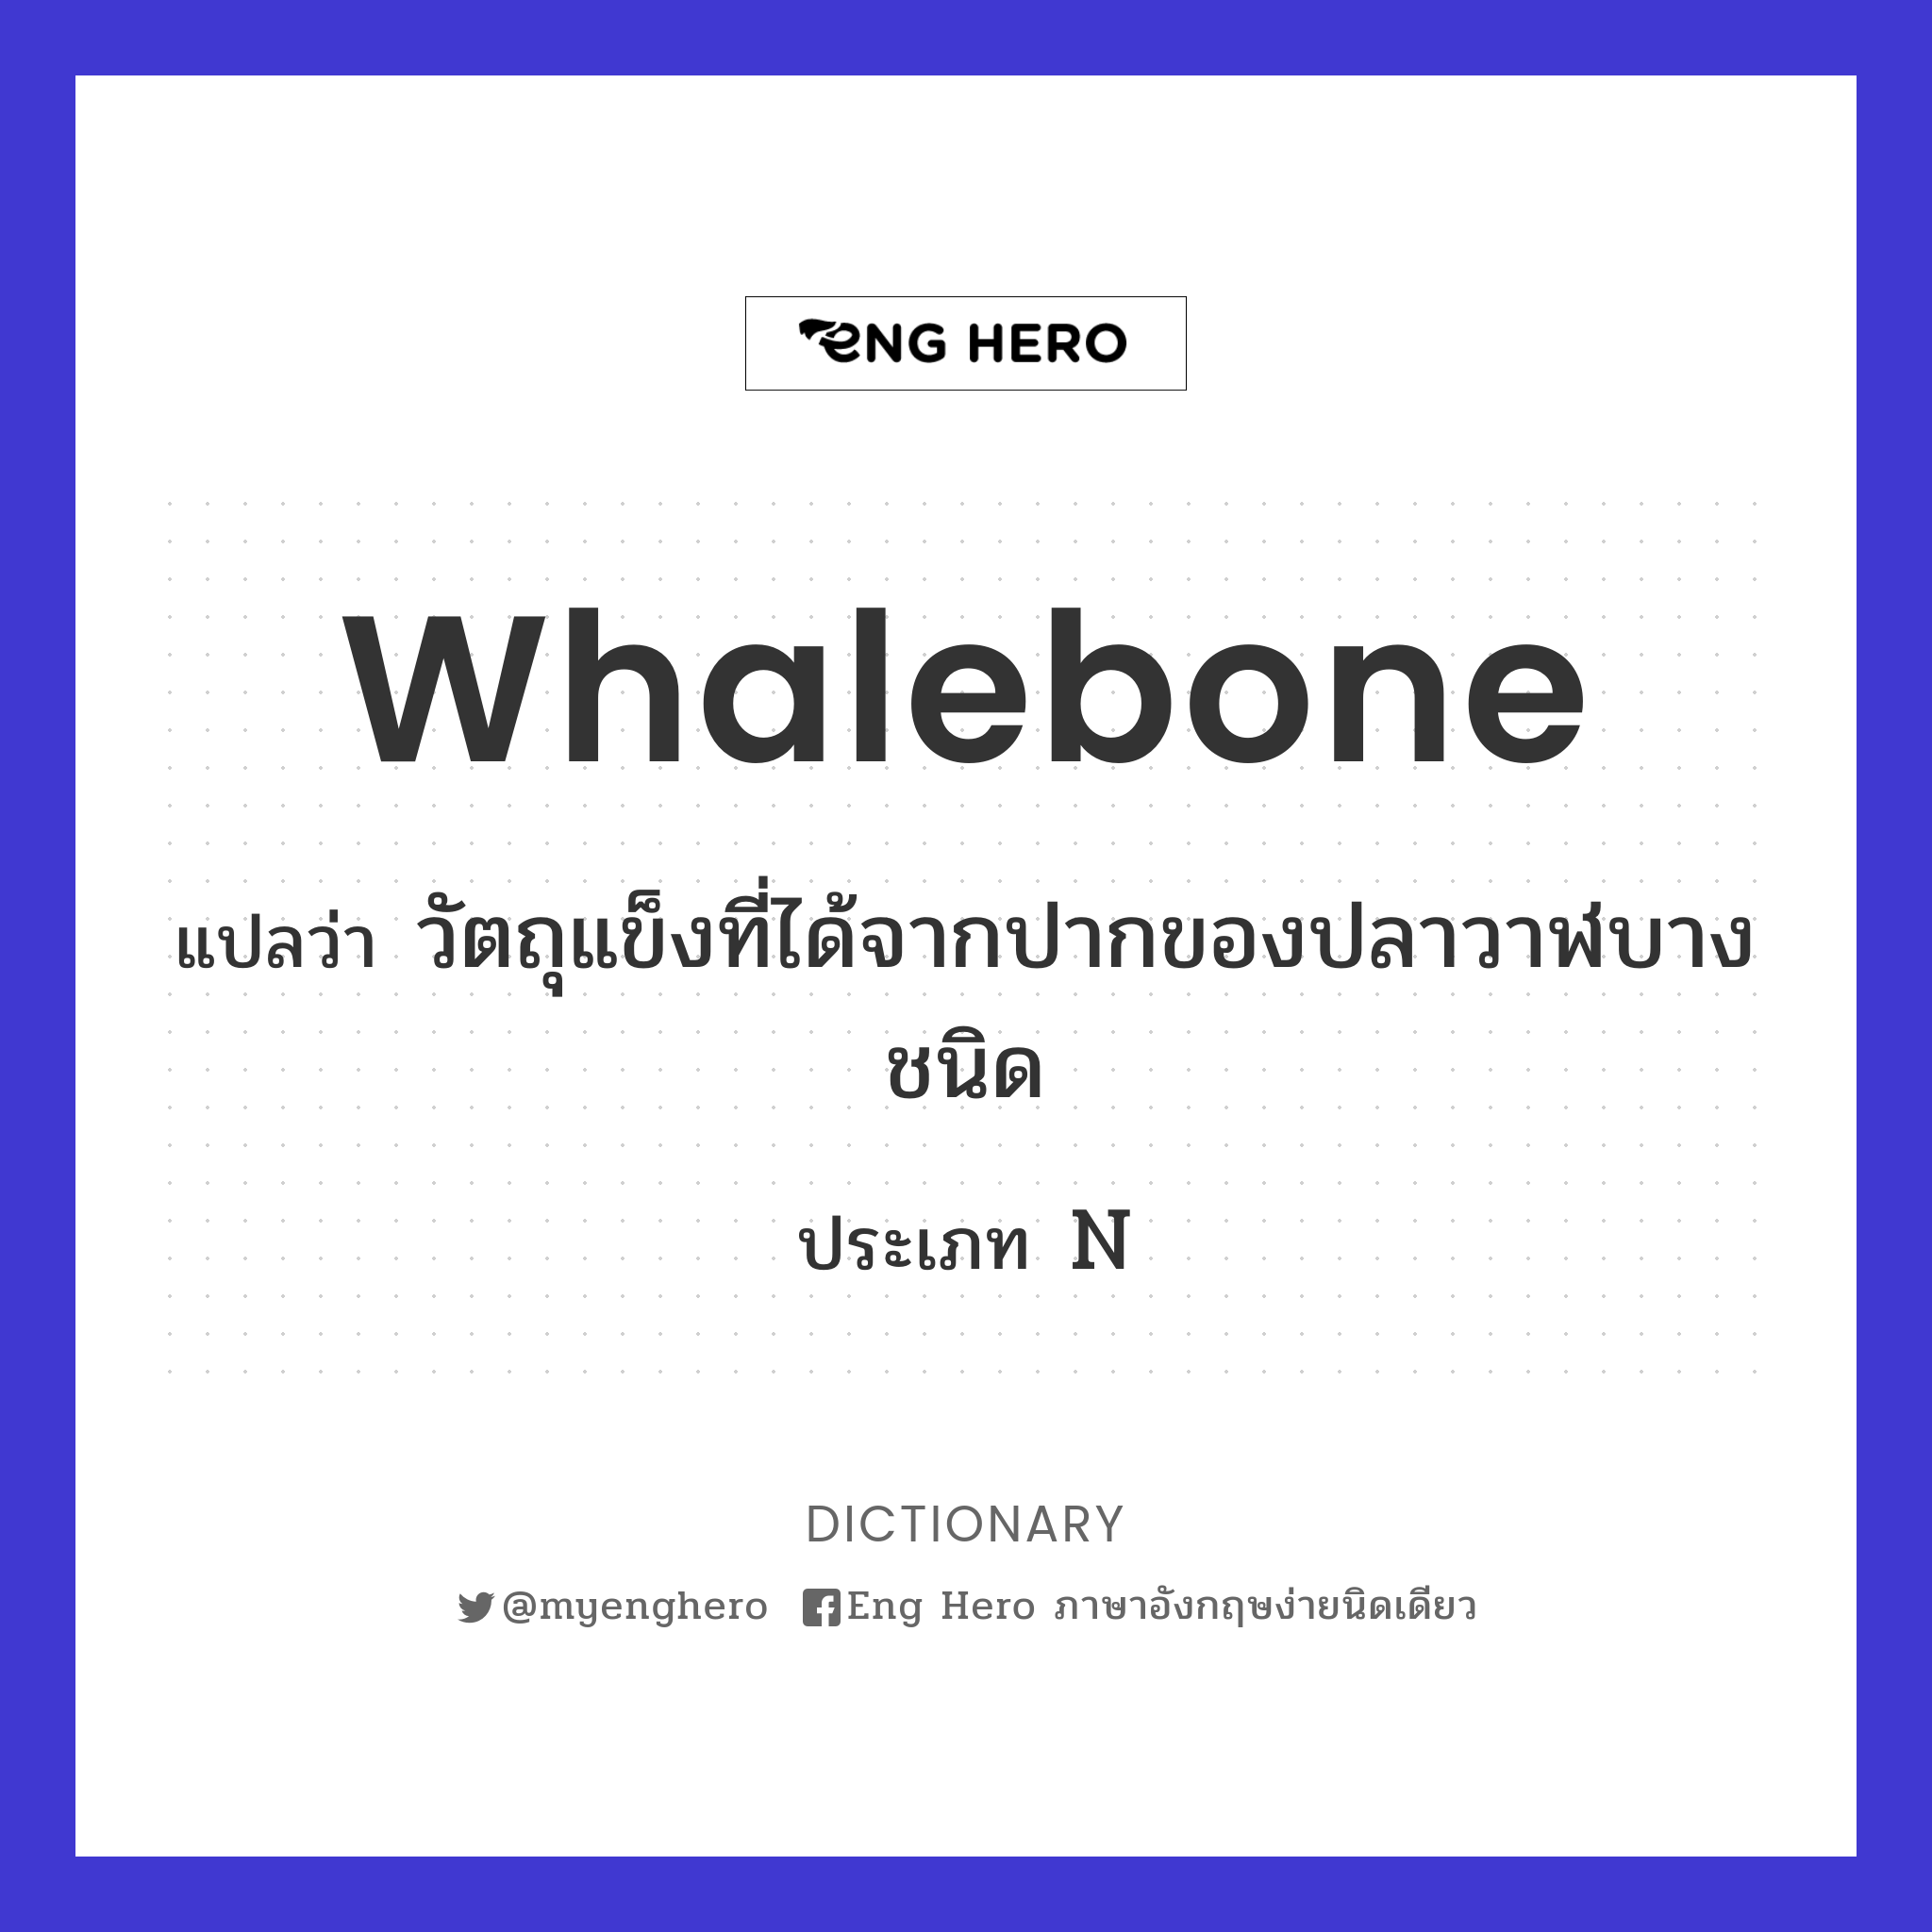 whalebone